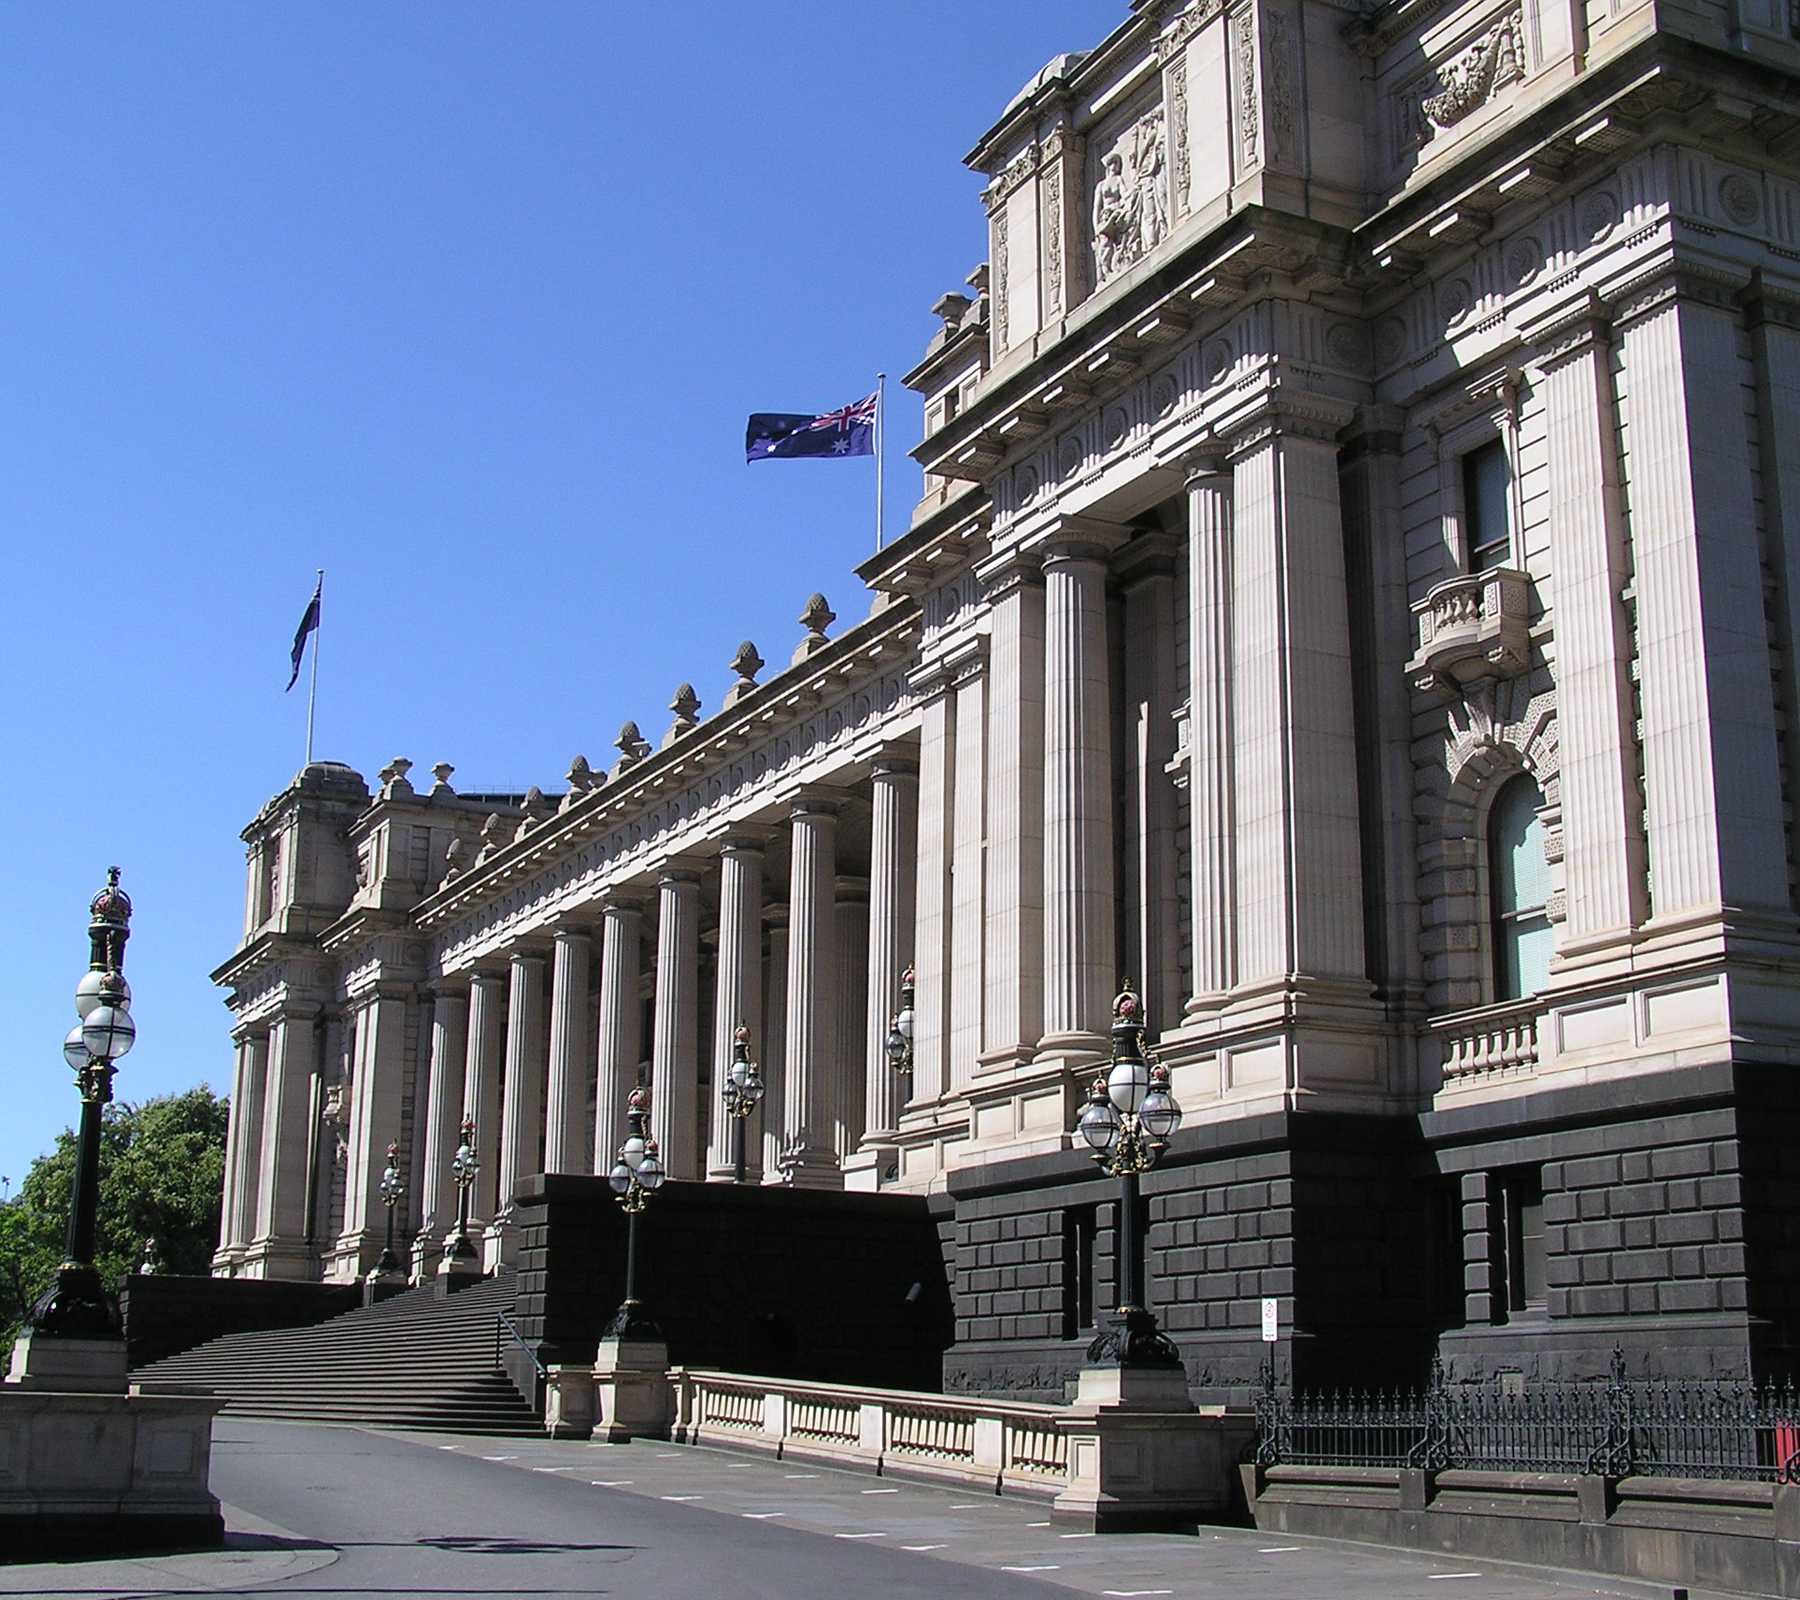 Exterior of Parliament House, Melbourne